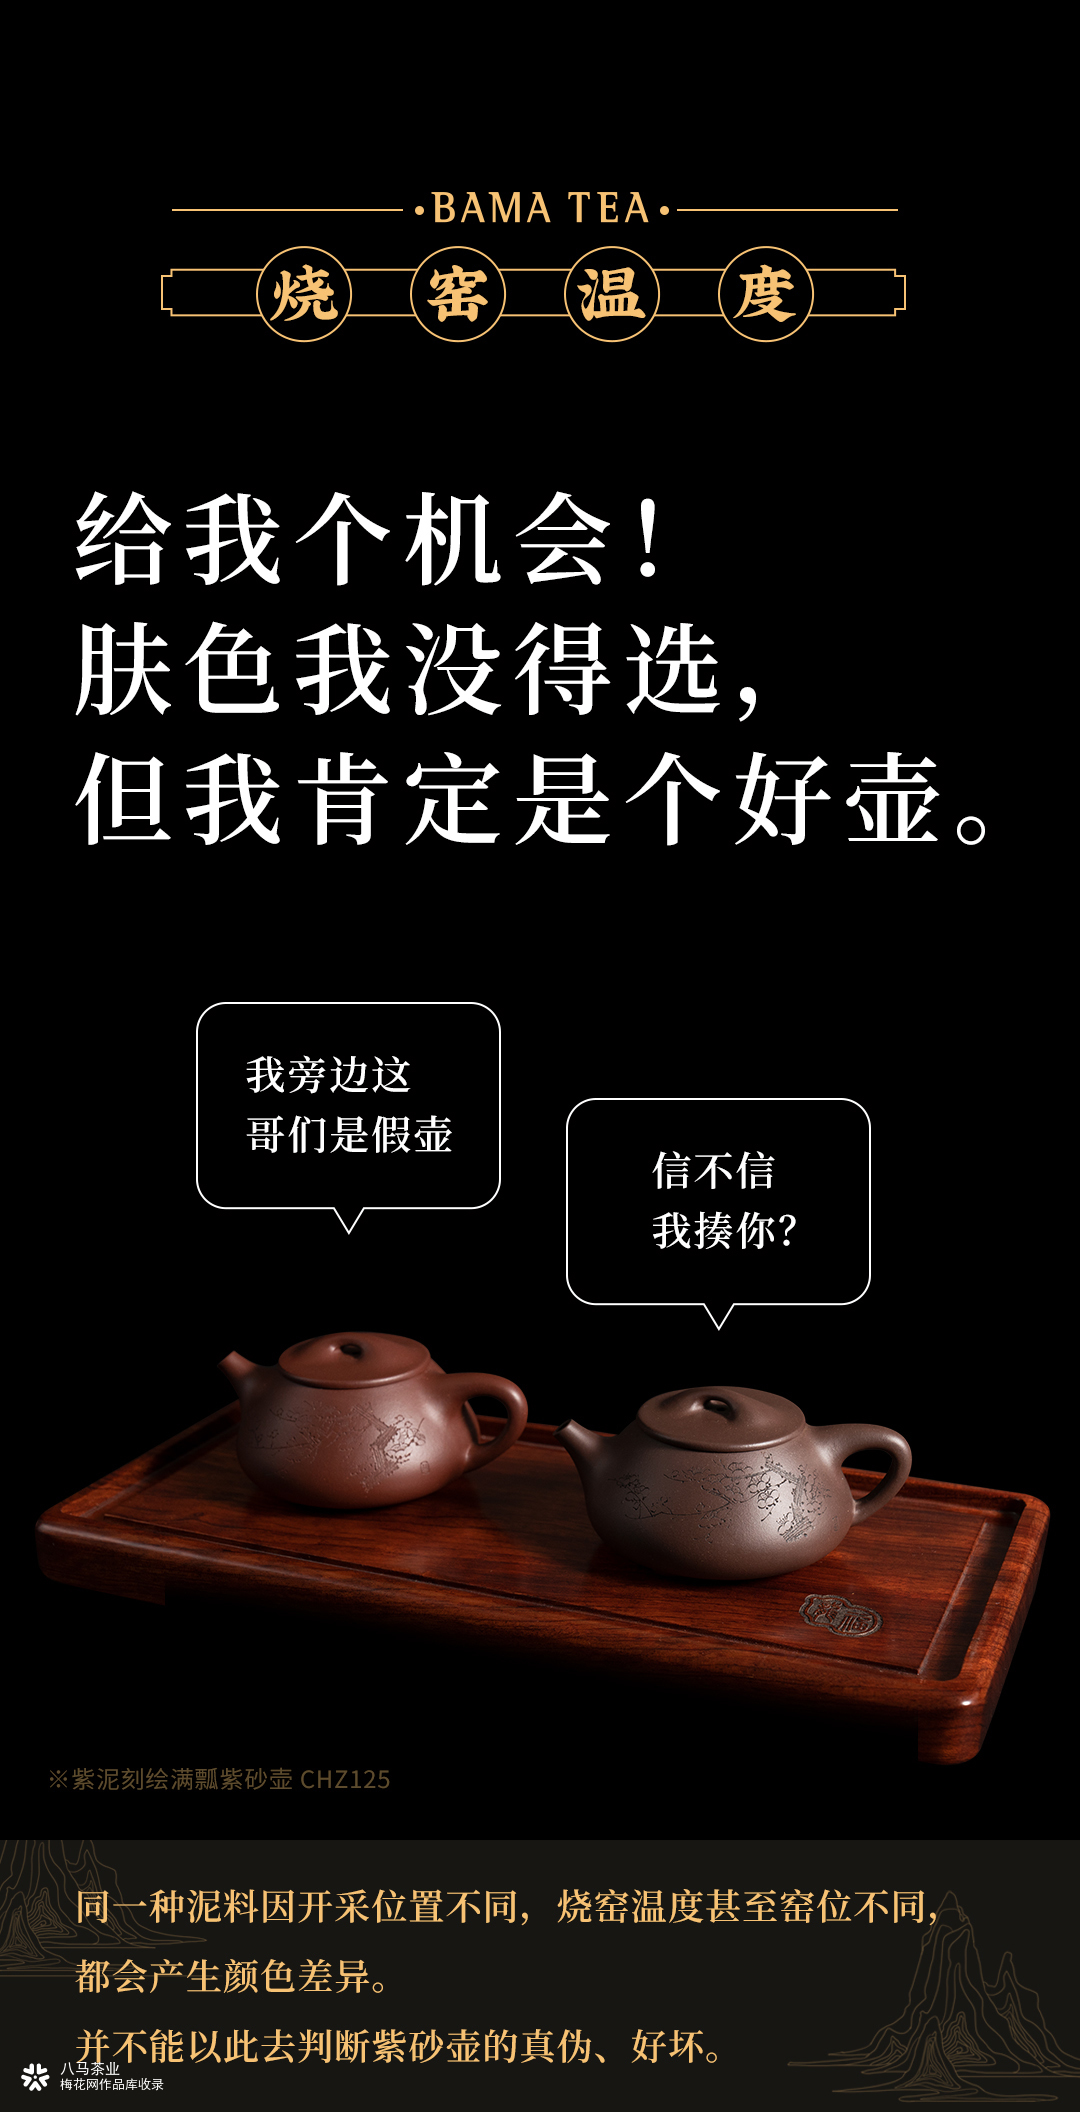 八马茶业创意海报《茶器对话》